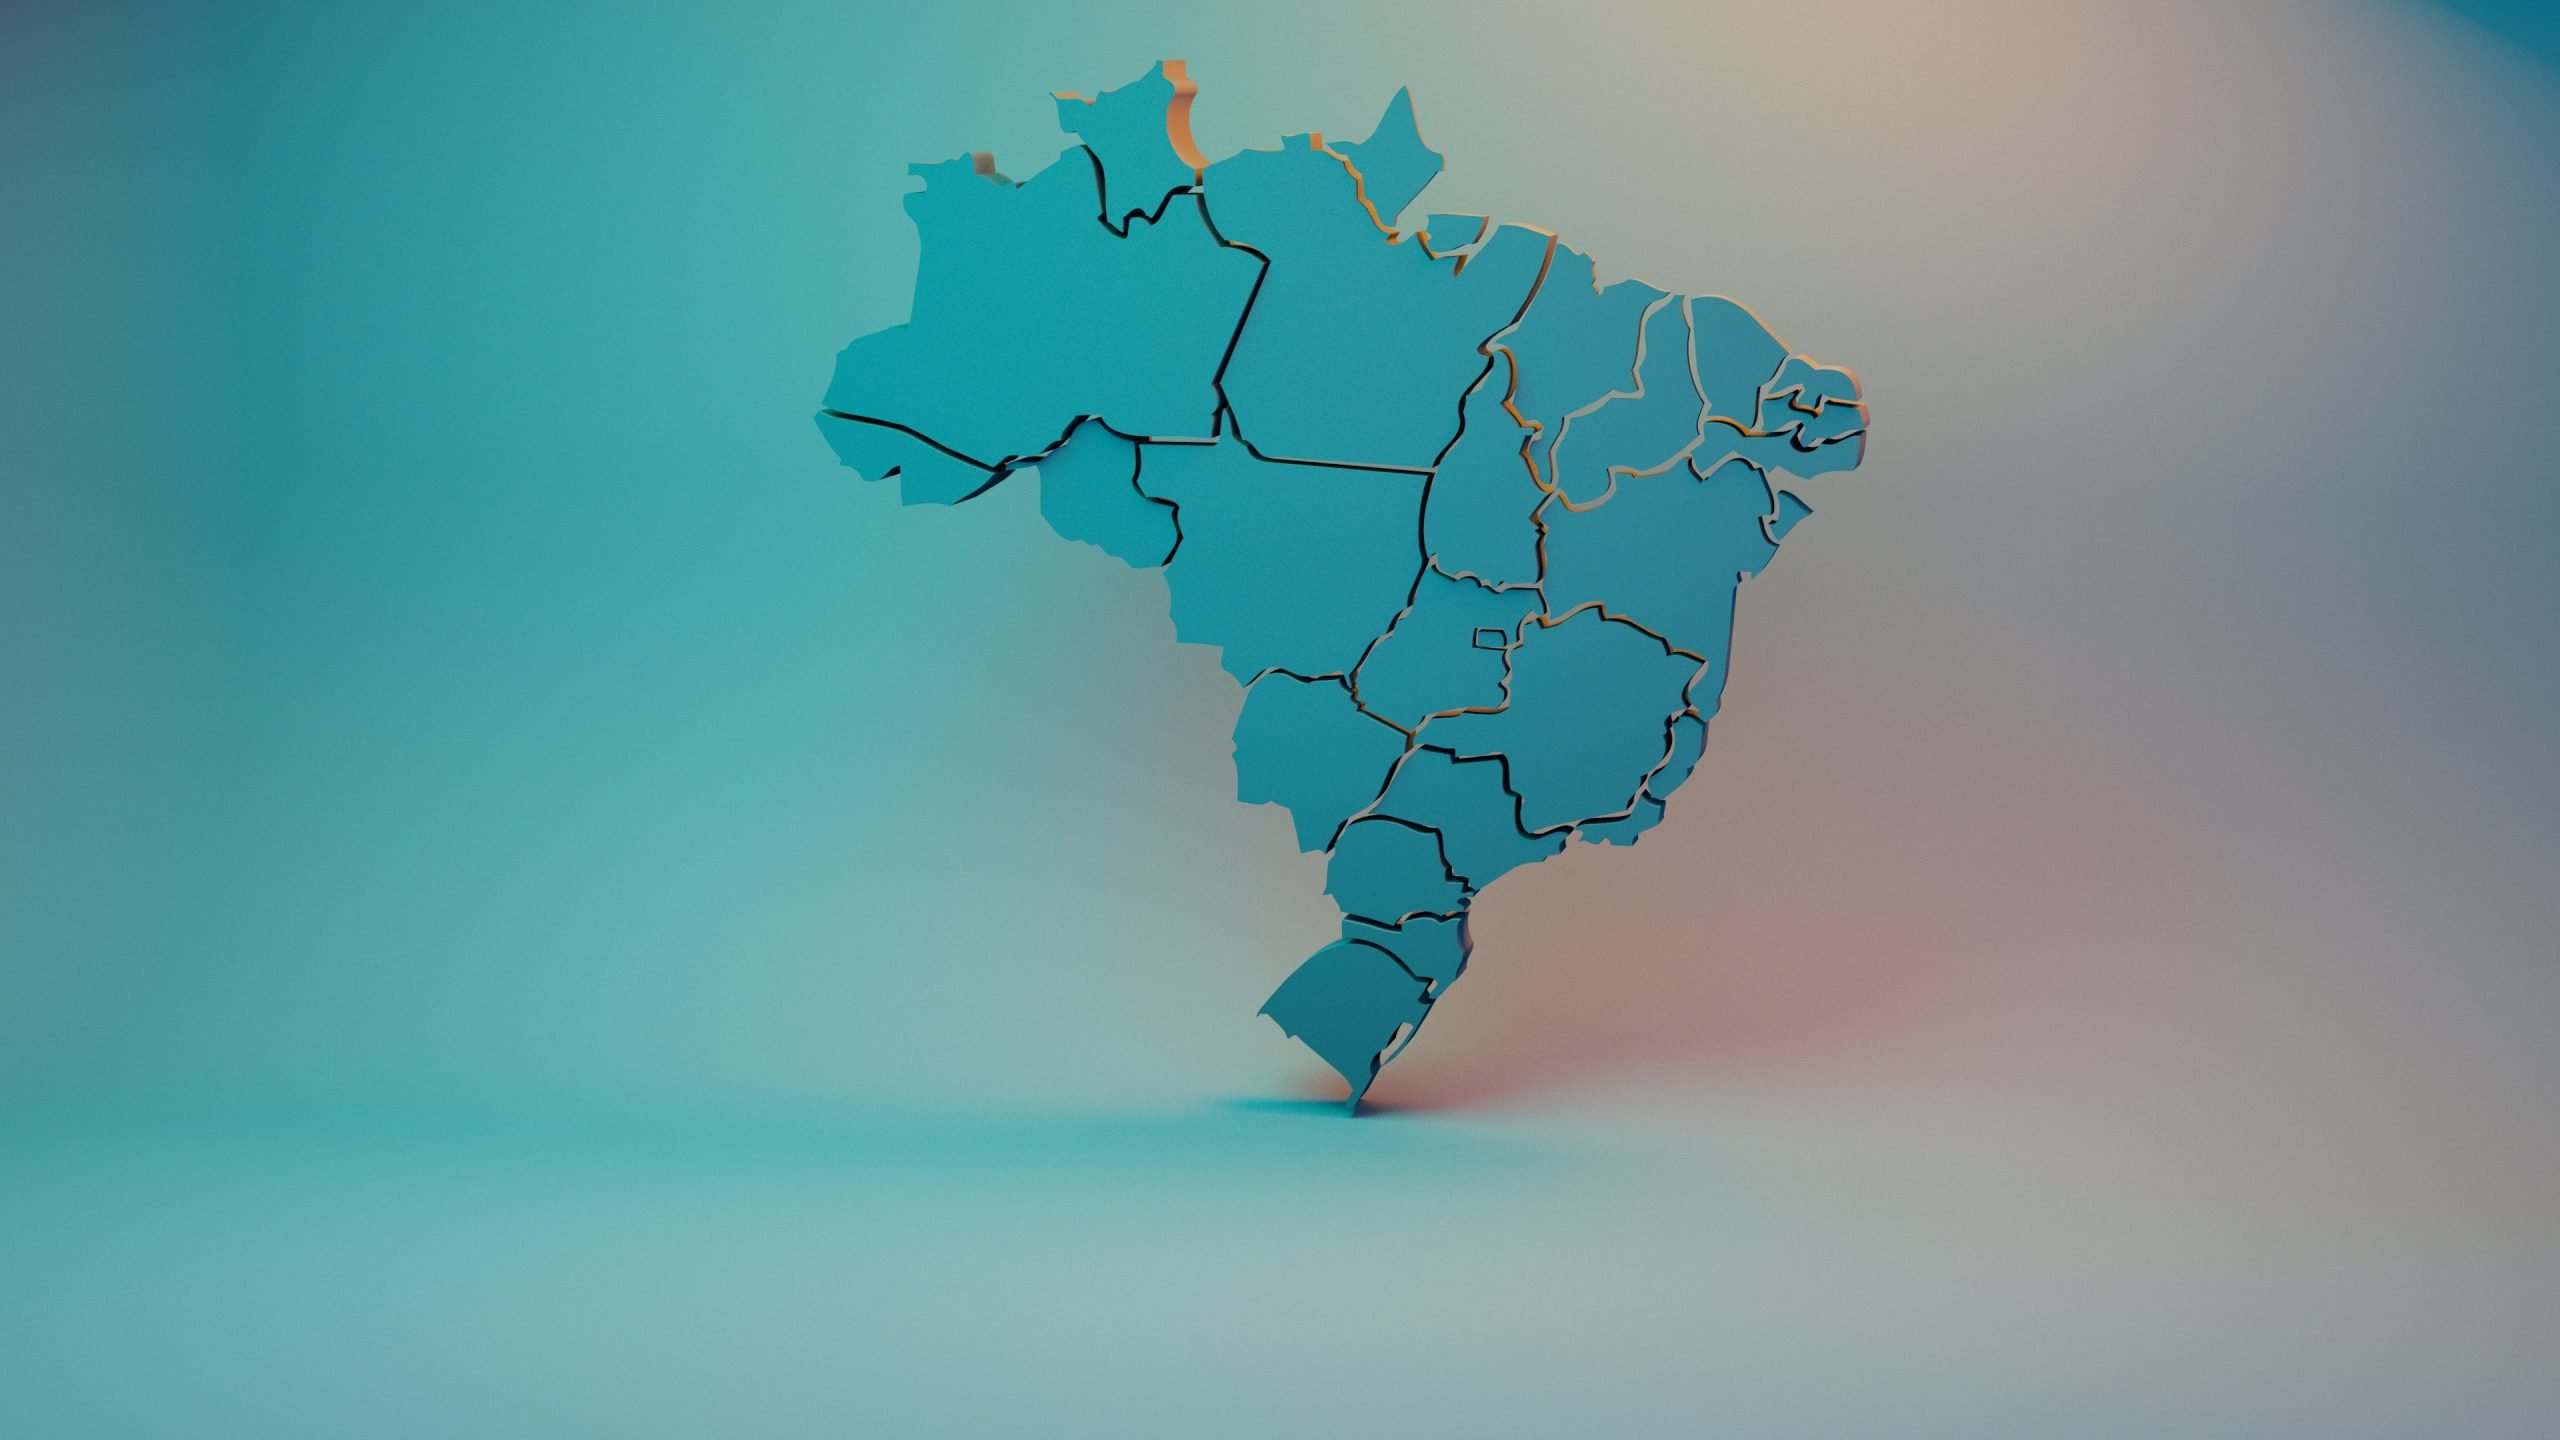 Brazil exposed data leak